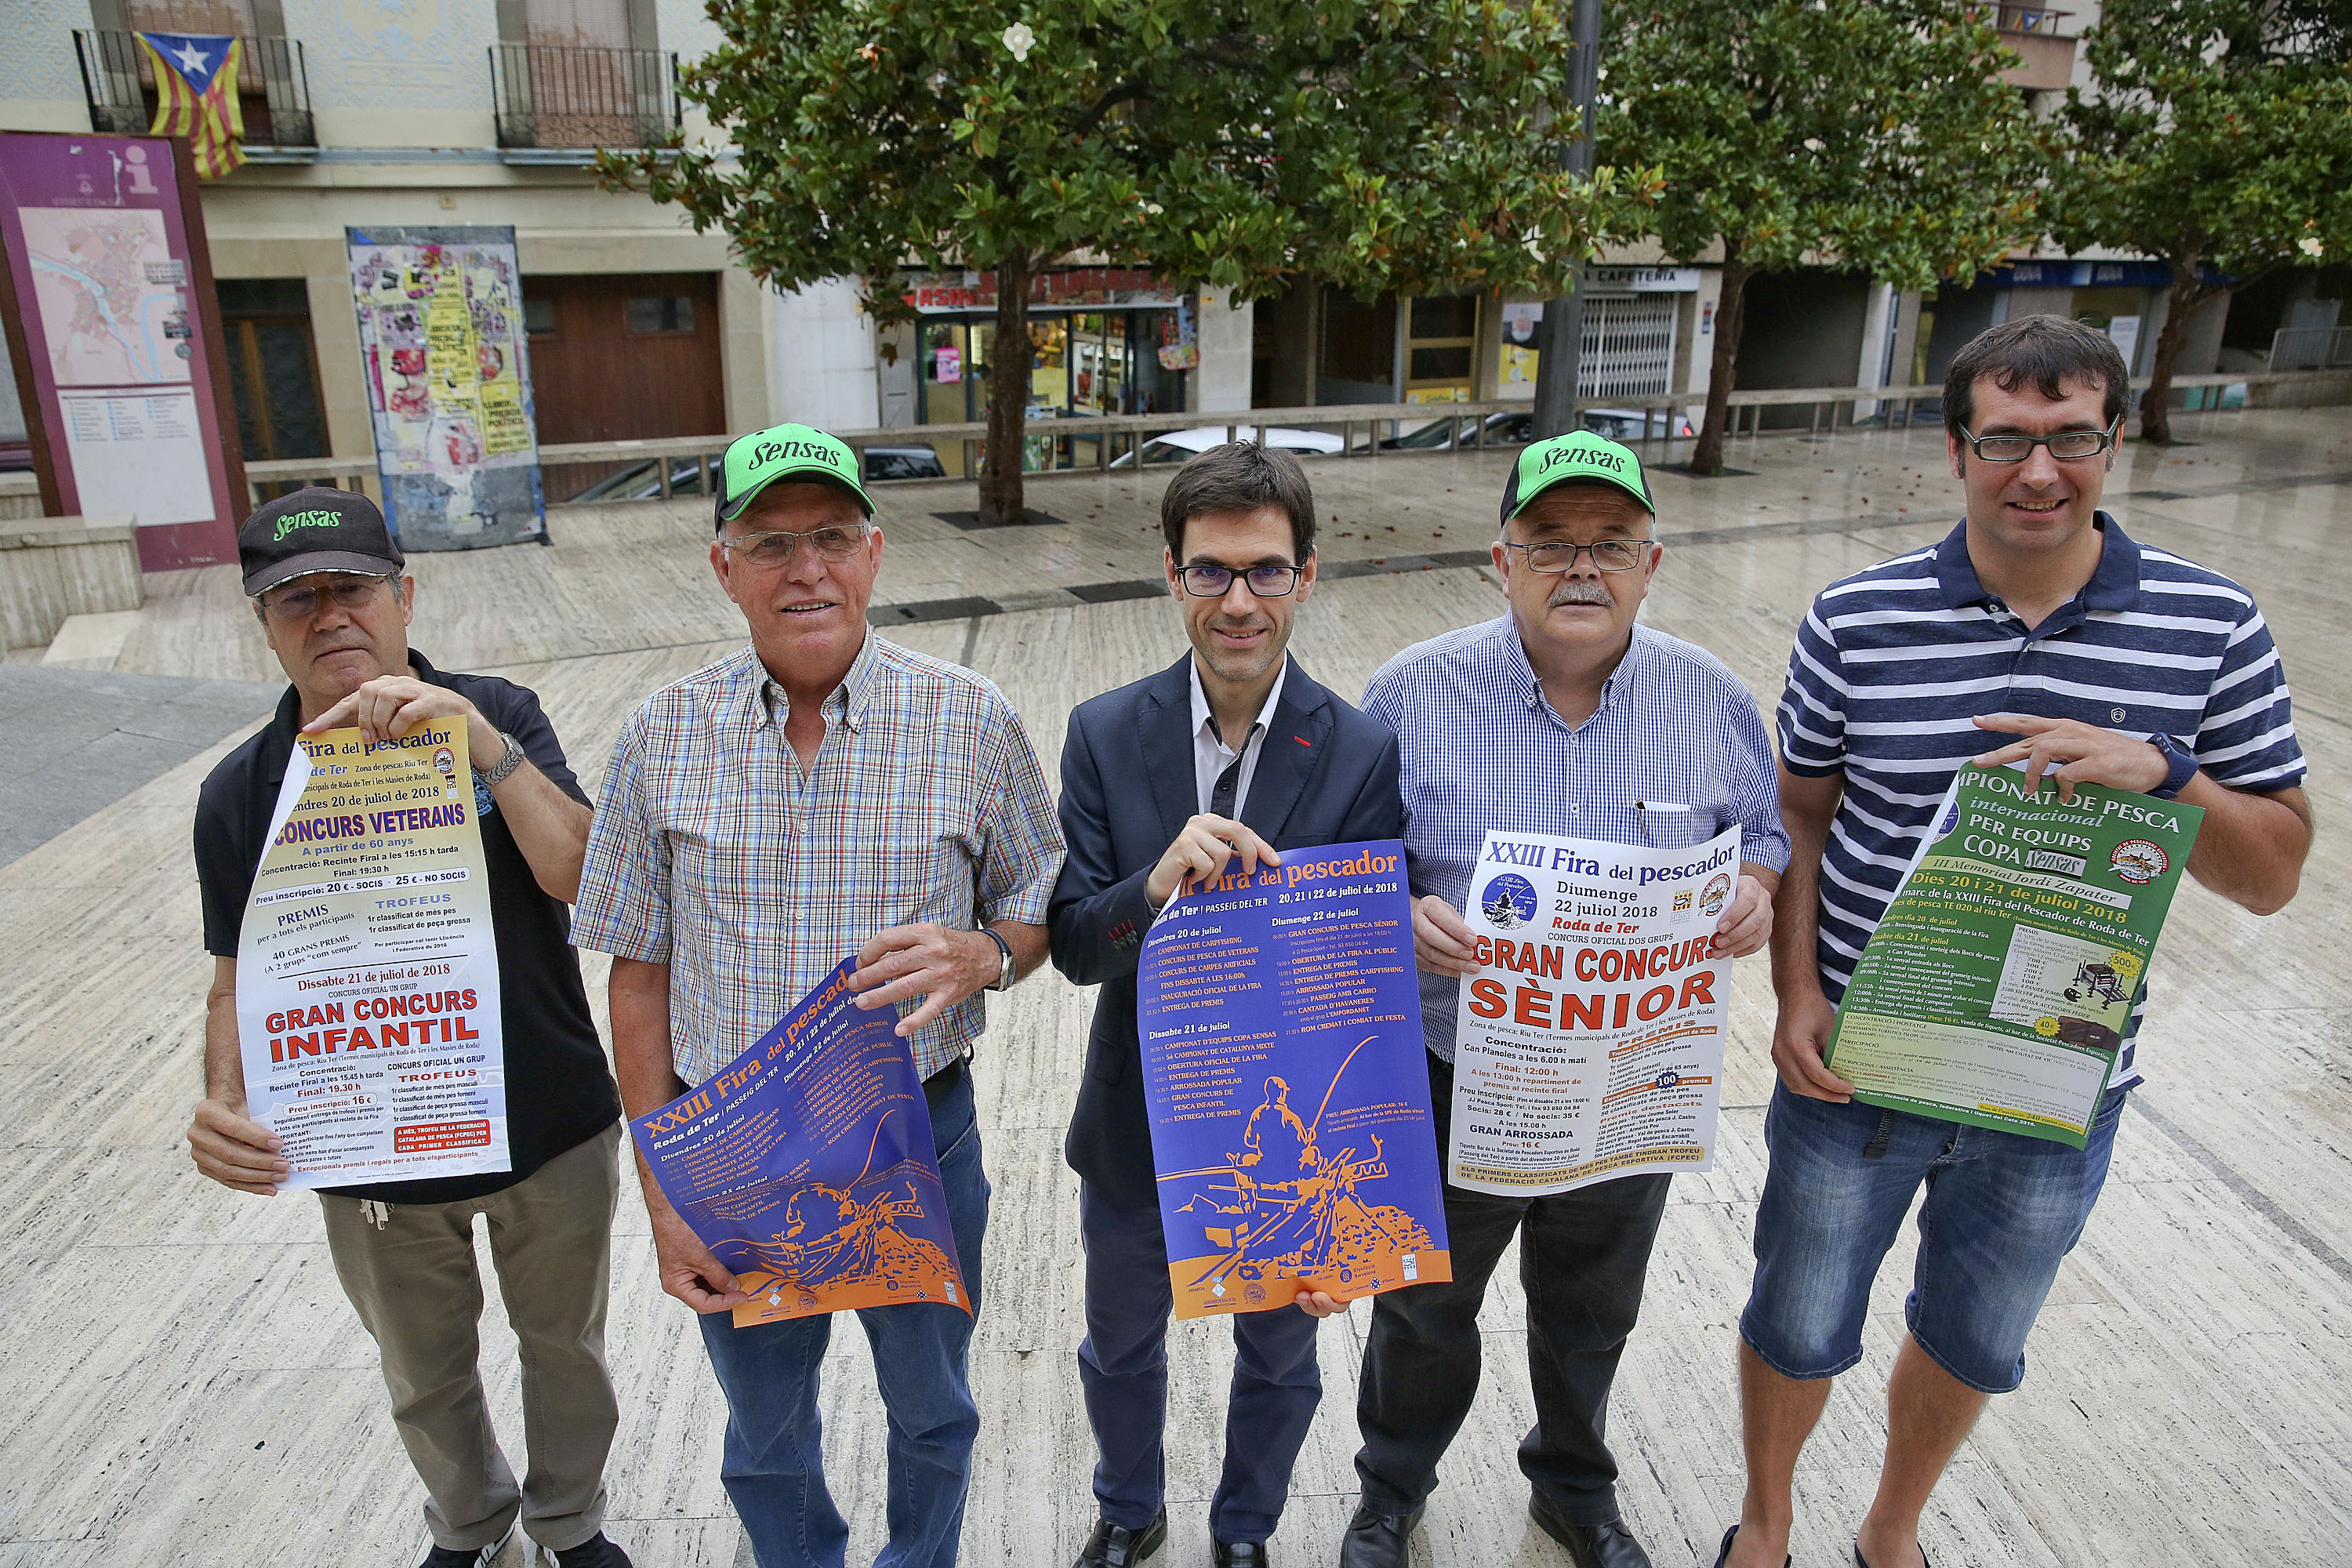 Membres de la Societat de Pescadors amb l'alcalde i el regidor de Promoció Econòmica, Toni Vila, amb els cartells de la fira